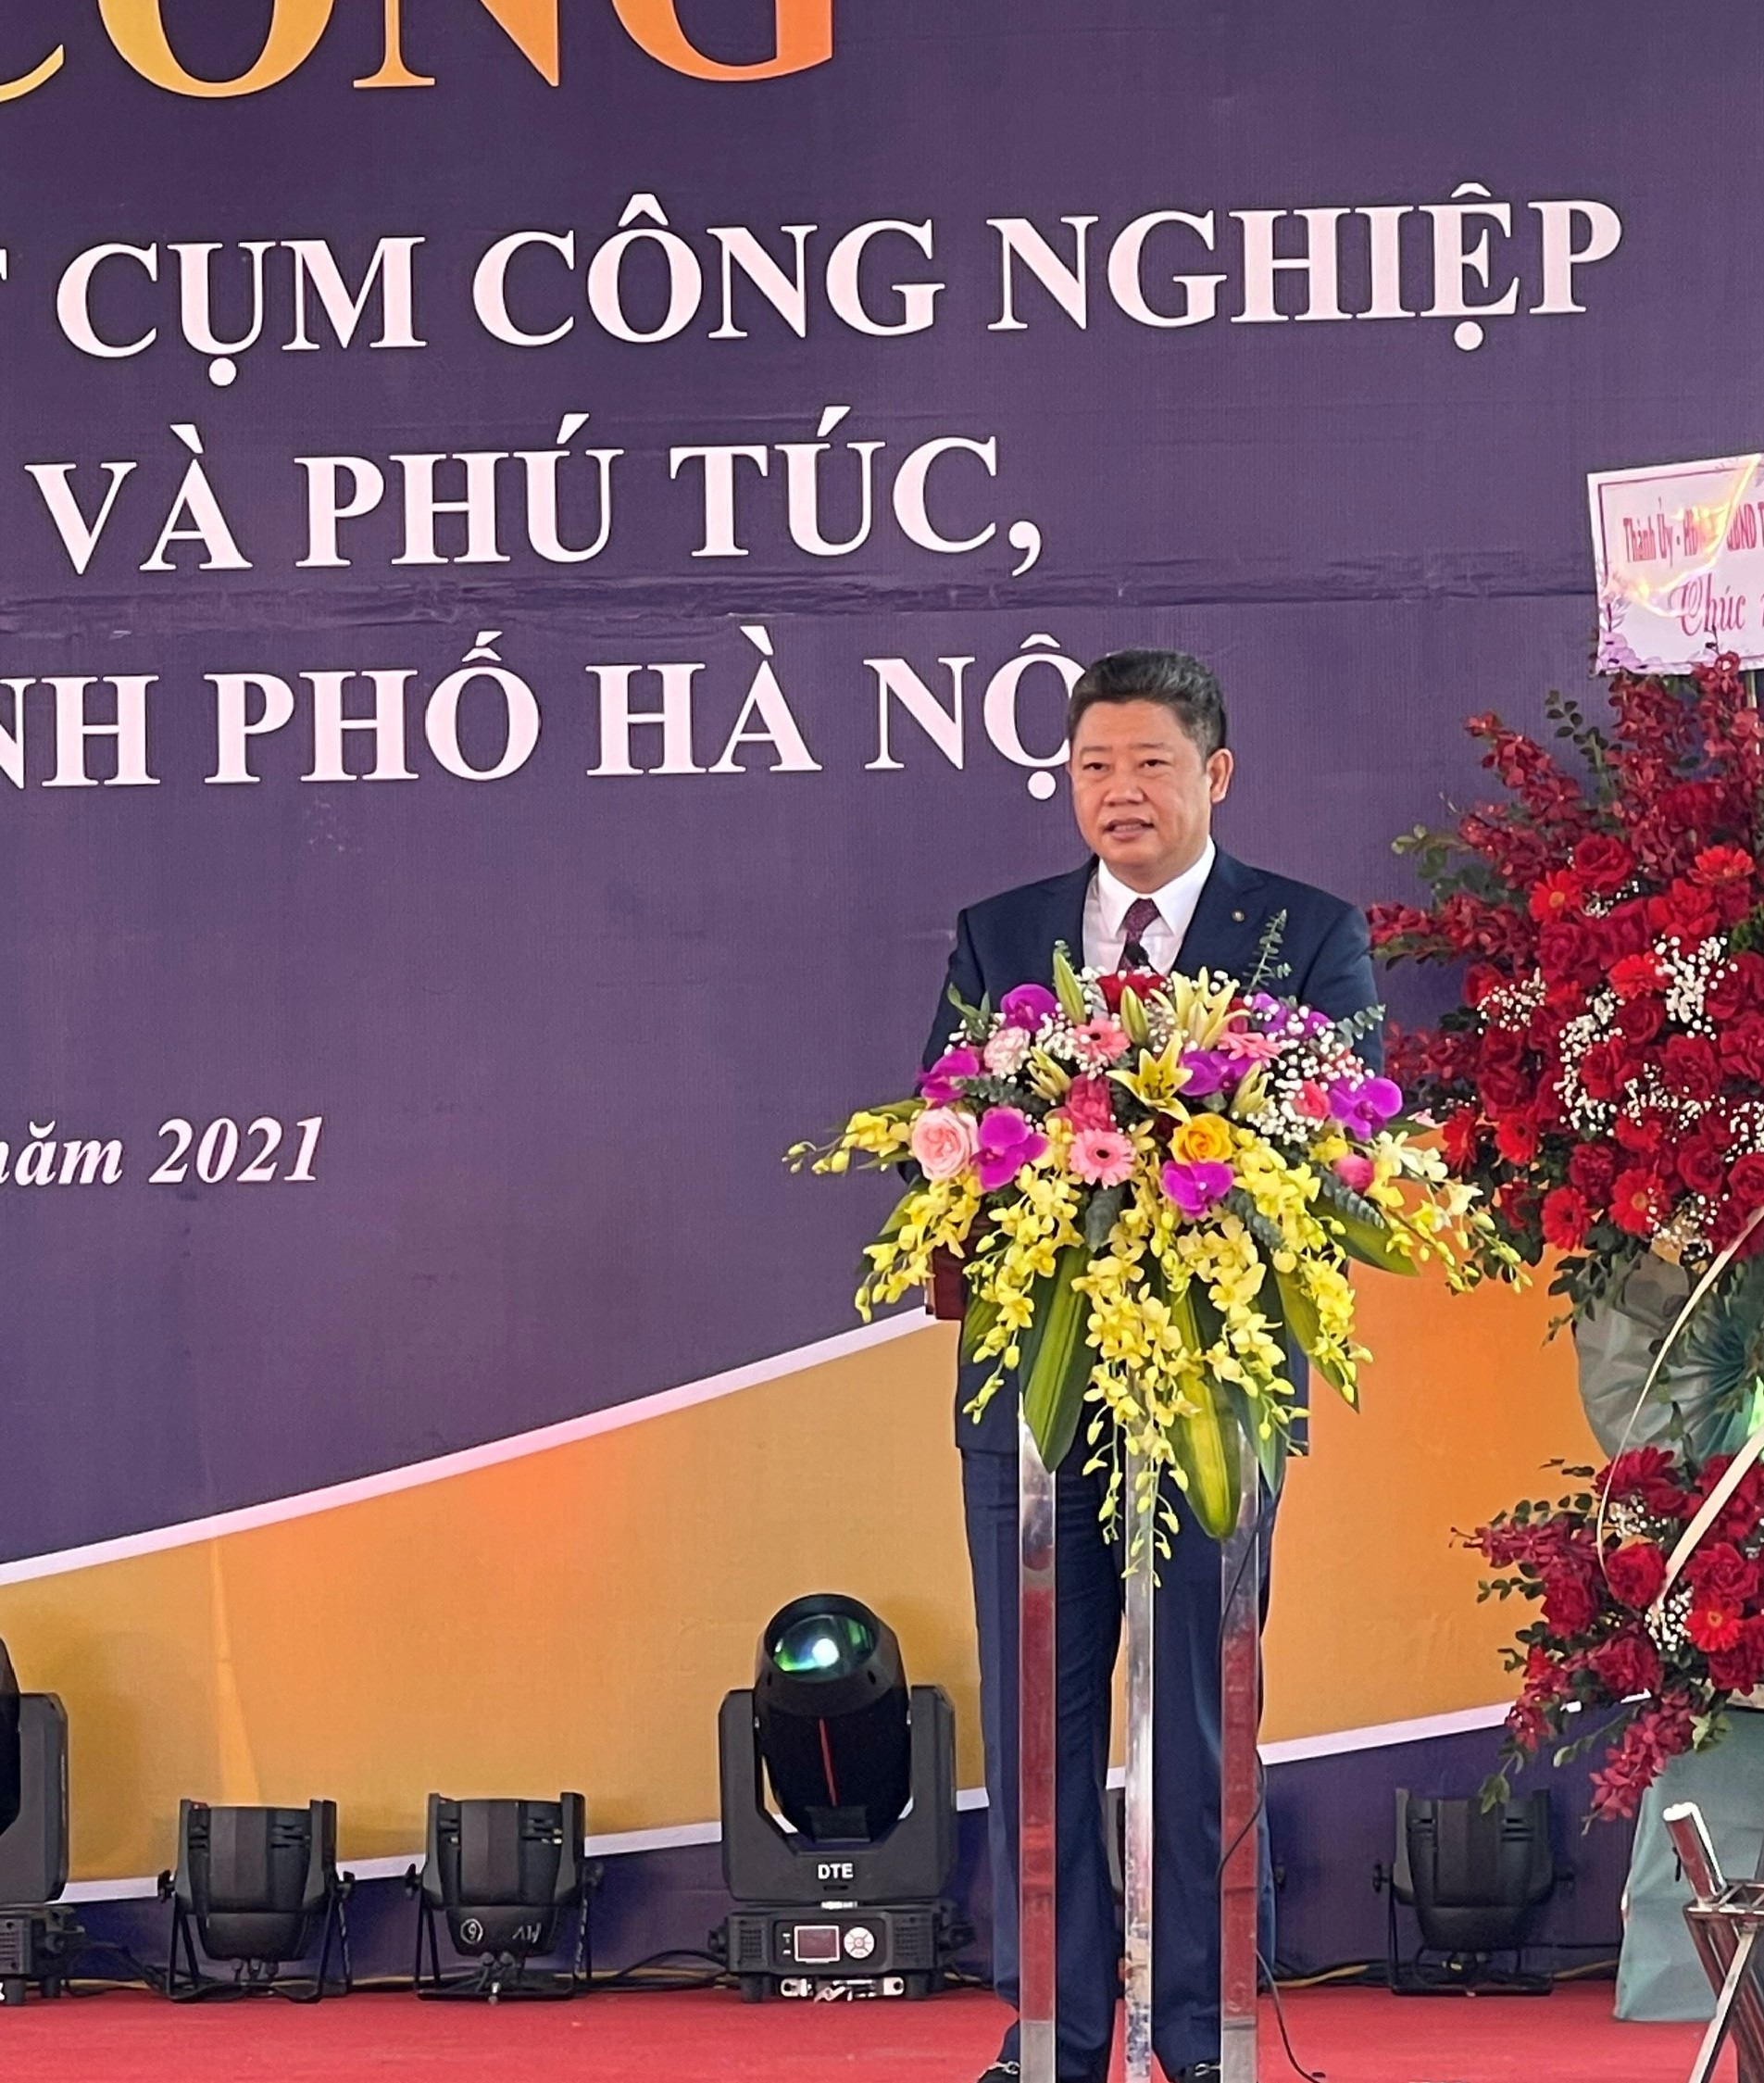 Hà Nội: Khởi công Cụm công nghiệp làng nghề Đại Thắng, Phú Xuyên